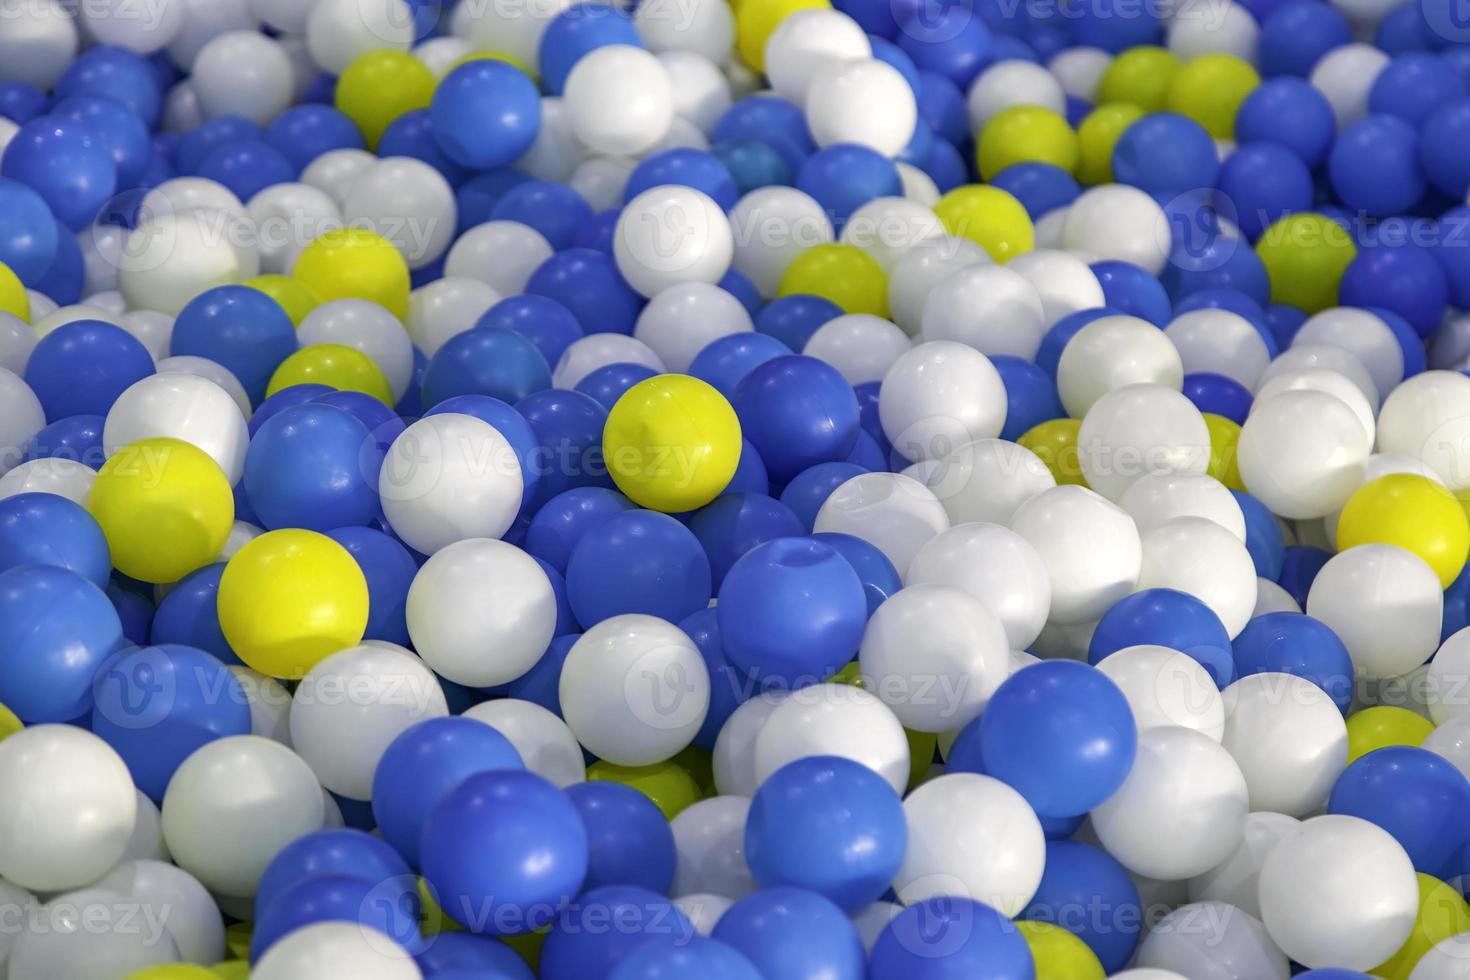 Fundo de muitas bolas coloridas de plástico na piscina de bolas em